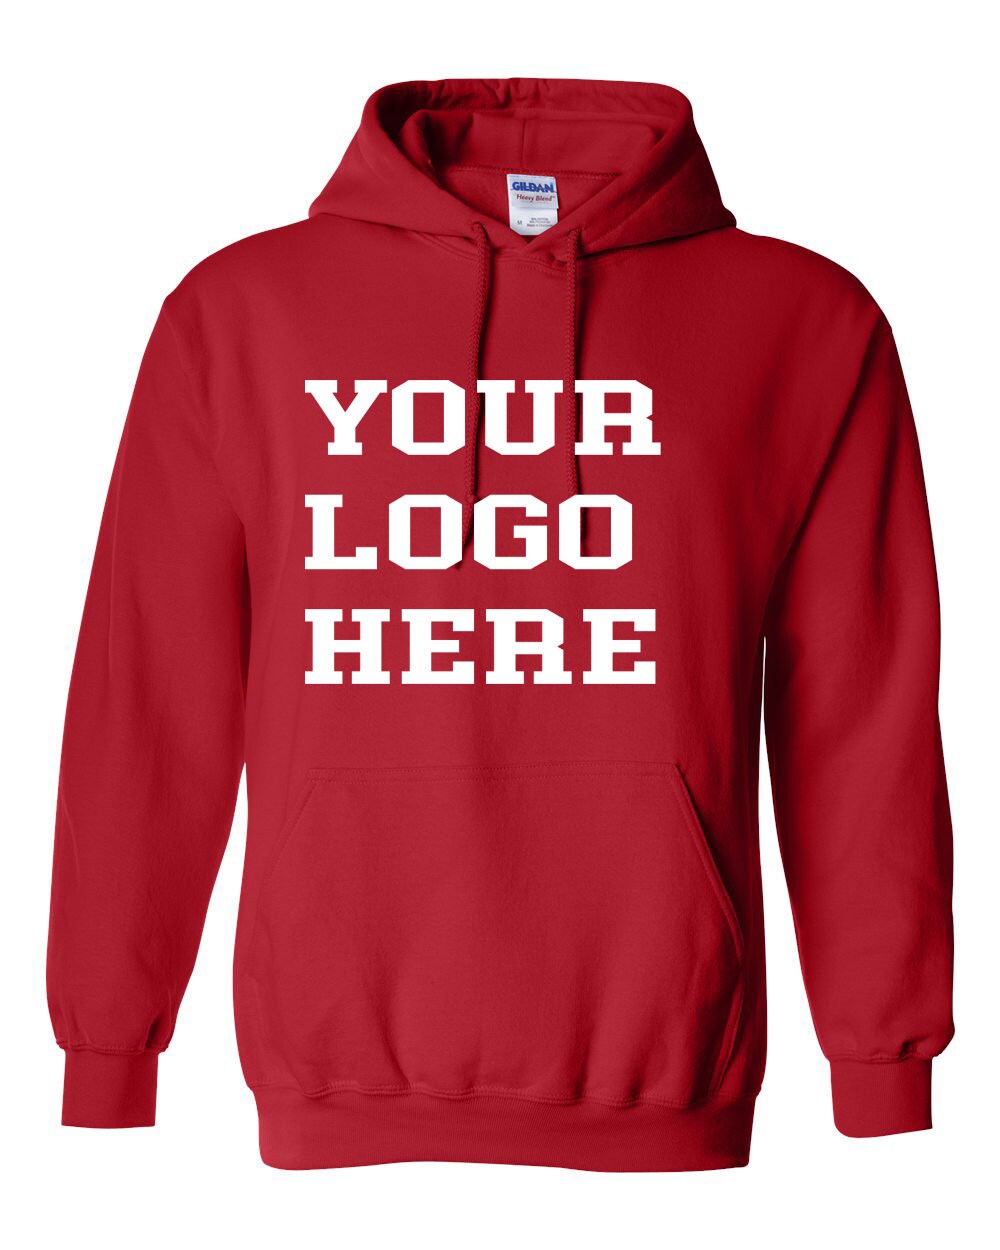 Gildan Hoodies Custom 1 Color Printed Hoodies|Personalized Hoodies|Custom Logo|Your Custom Logo| Bulk Order Options